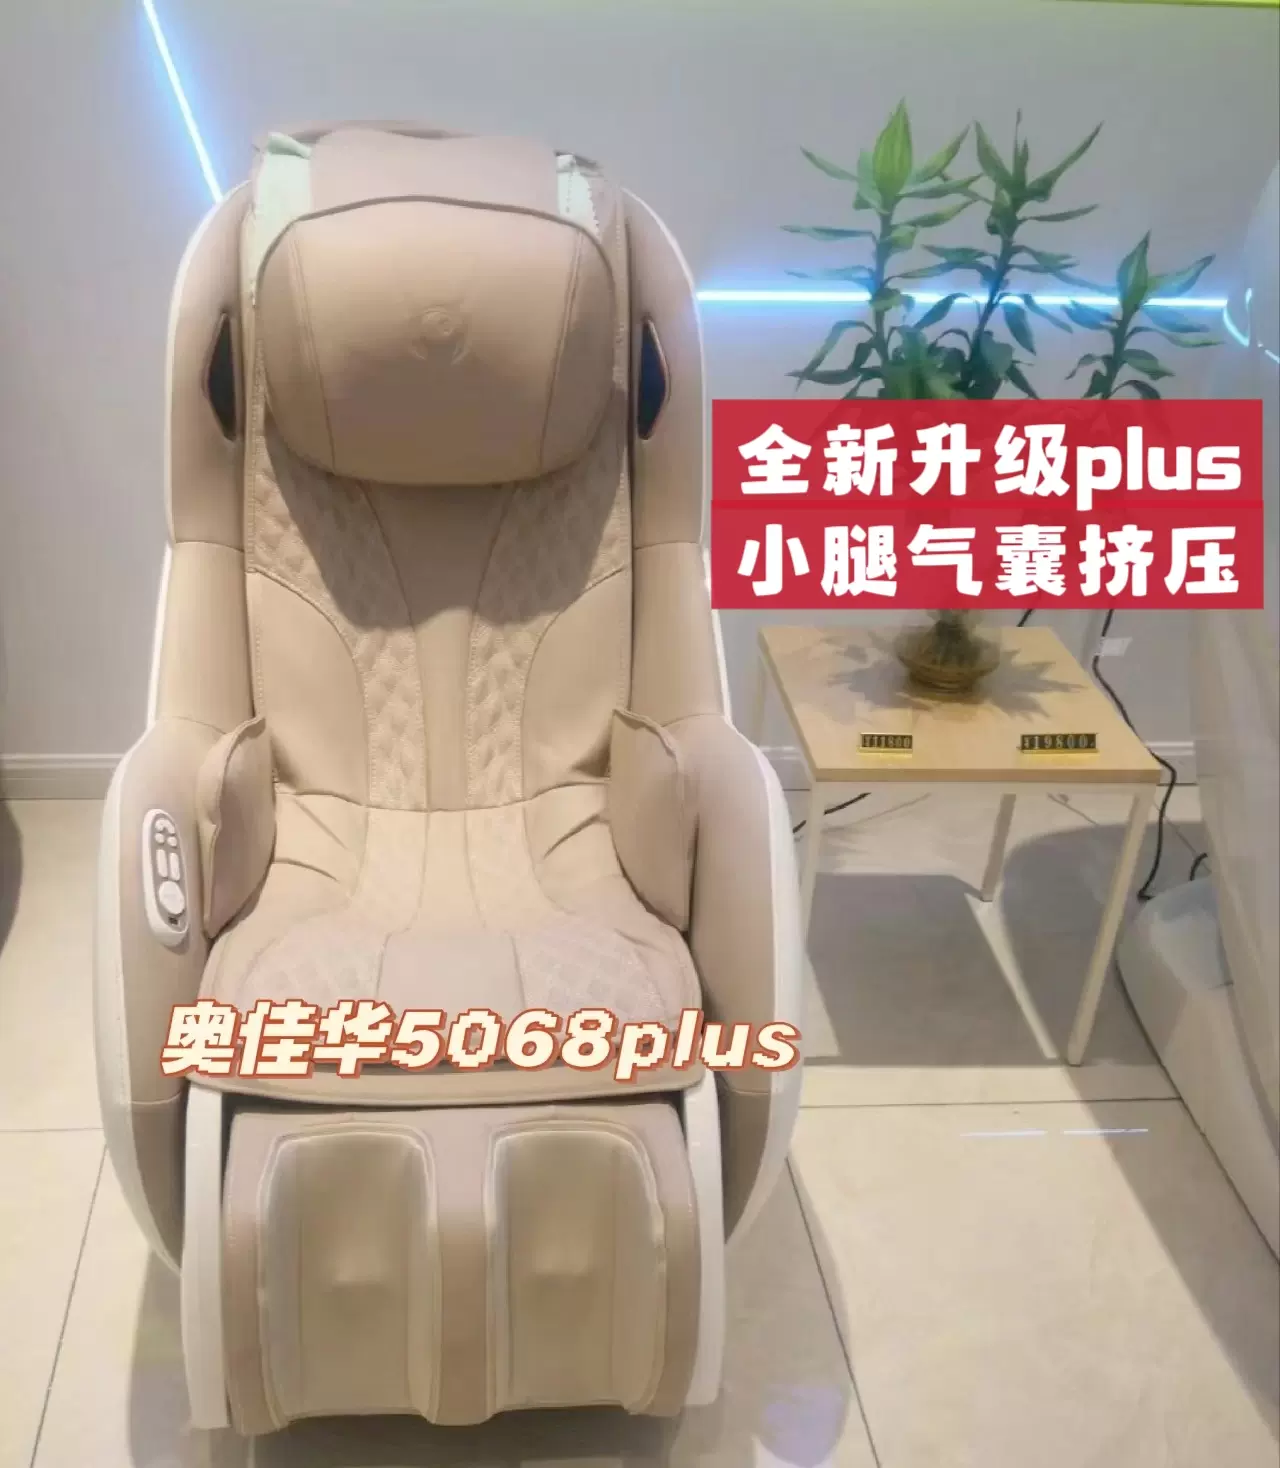 奧佳華5068plus按摩椅OG5068按摩沙發J20小型OGAWA多功能沙發專櫃-Taobao